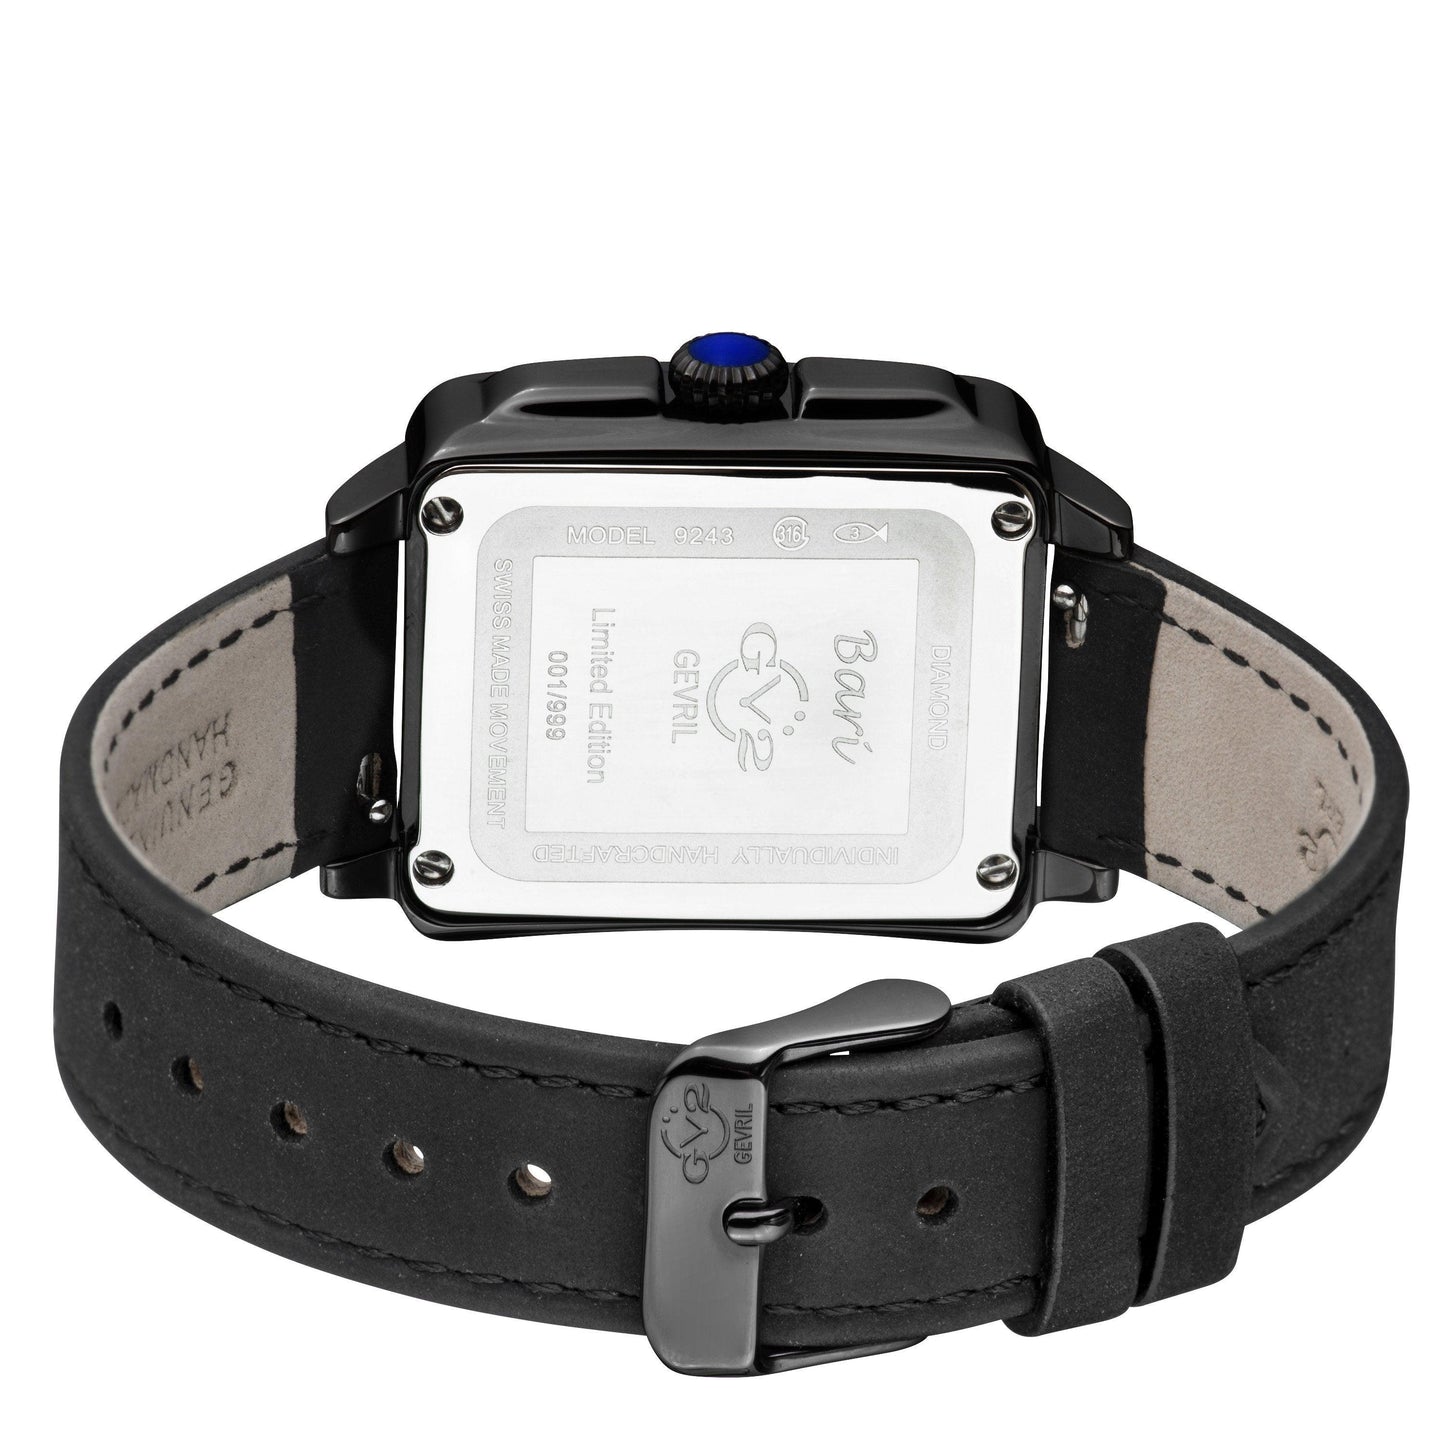 Gevril-Luxury-Swiss-Watches-GV2 Bari Tortoise Diamond-9243